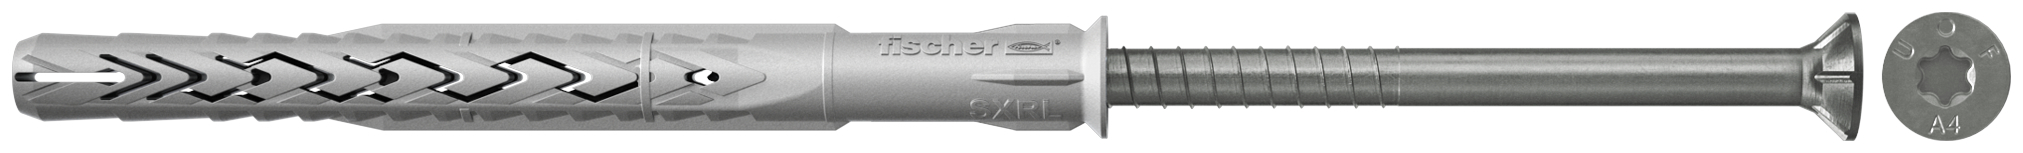 fischer Tasselli prolungati SXRL 10X100 T A4 (1 Pz.) Tassello prolungato in nylon con marcatura CE con vite premontata in acciaio inox A4, T.S.P. impronta torx fie2376